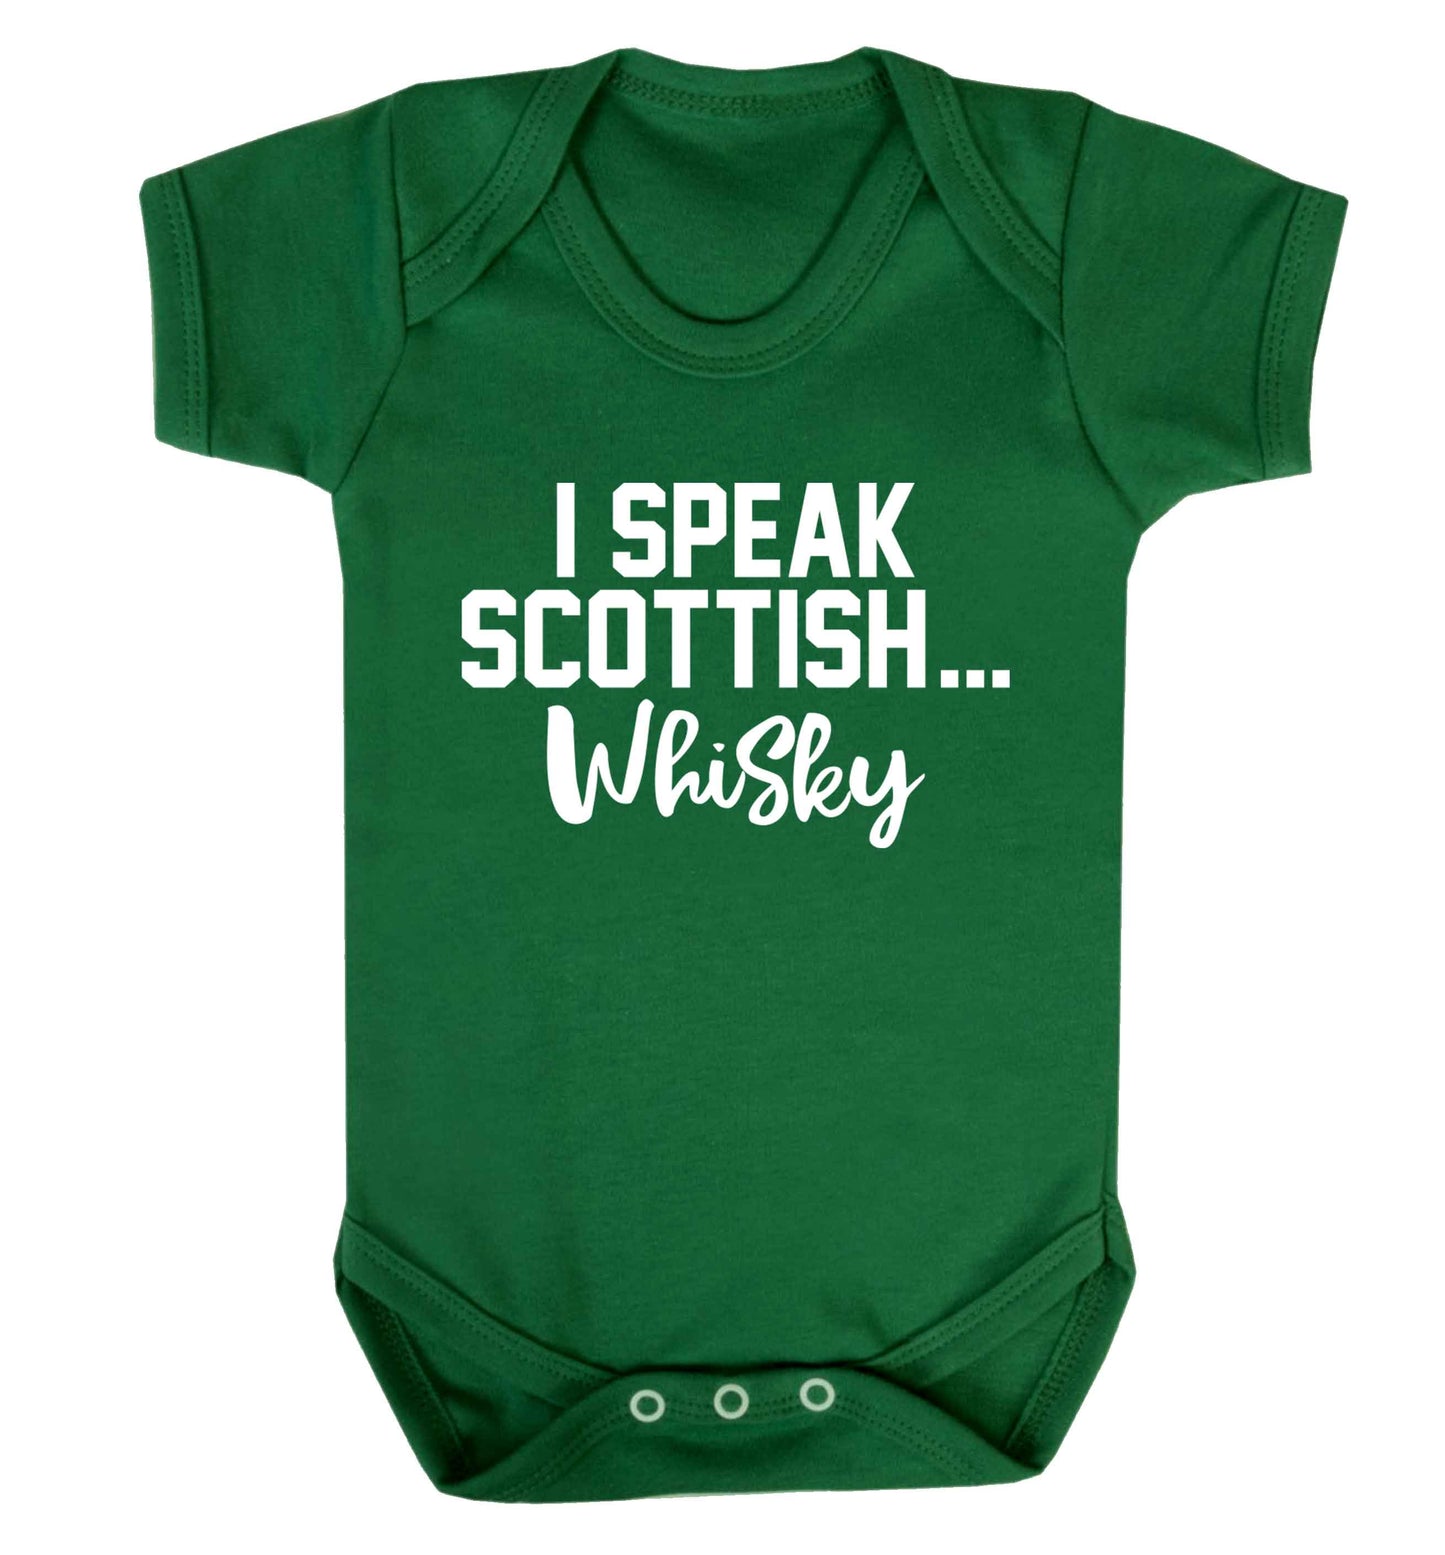 I speak scottish...whisky Baby Vest green 18-24 months